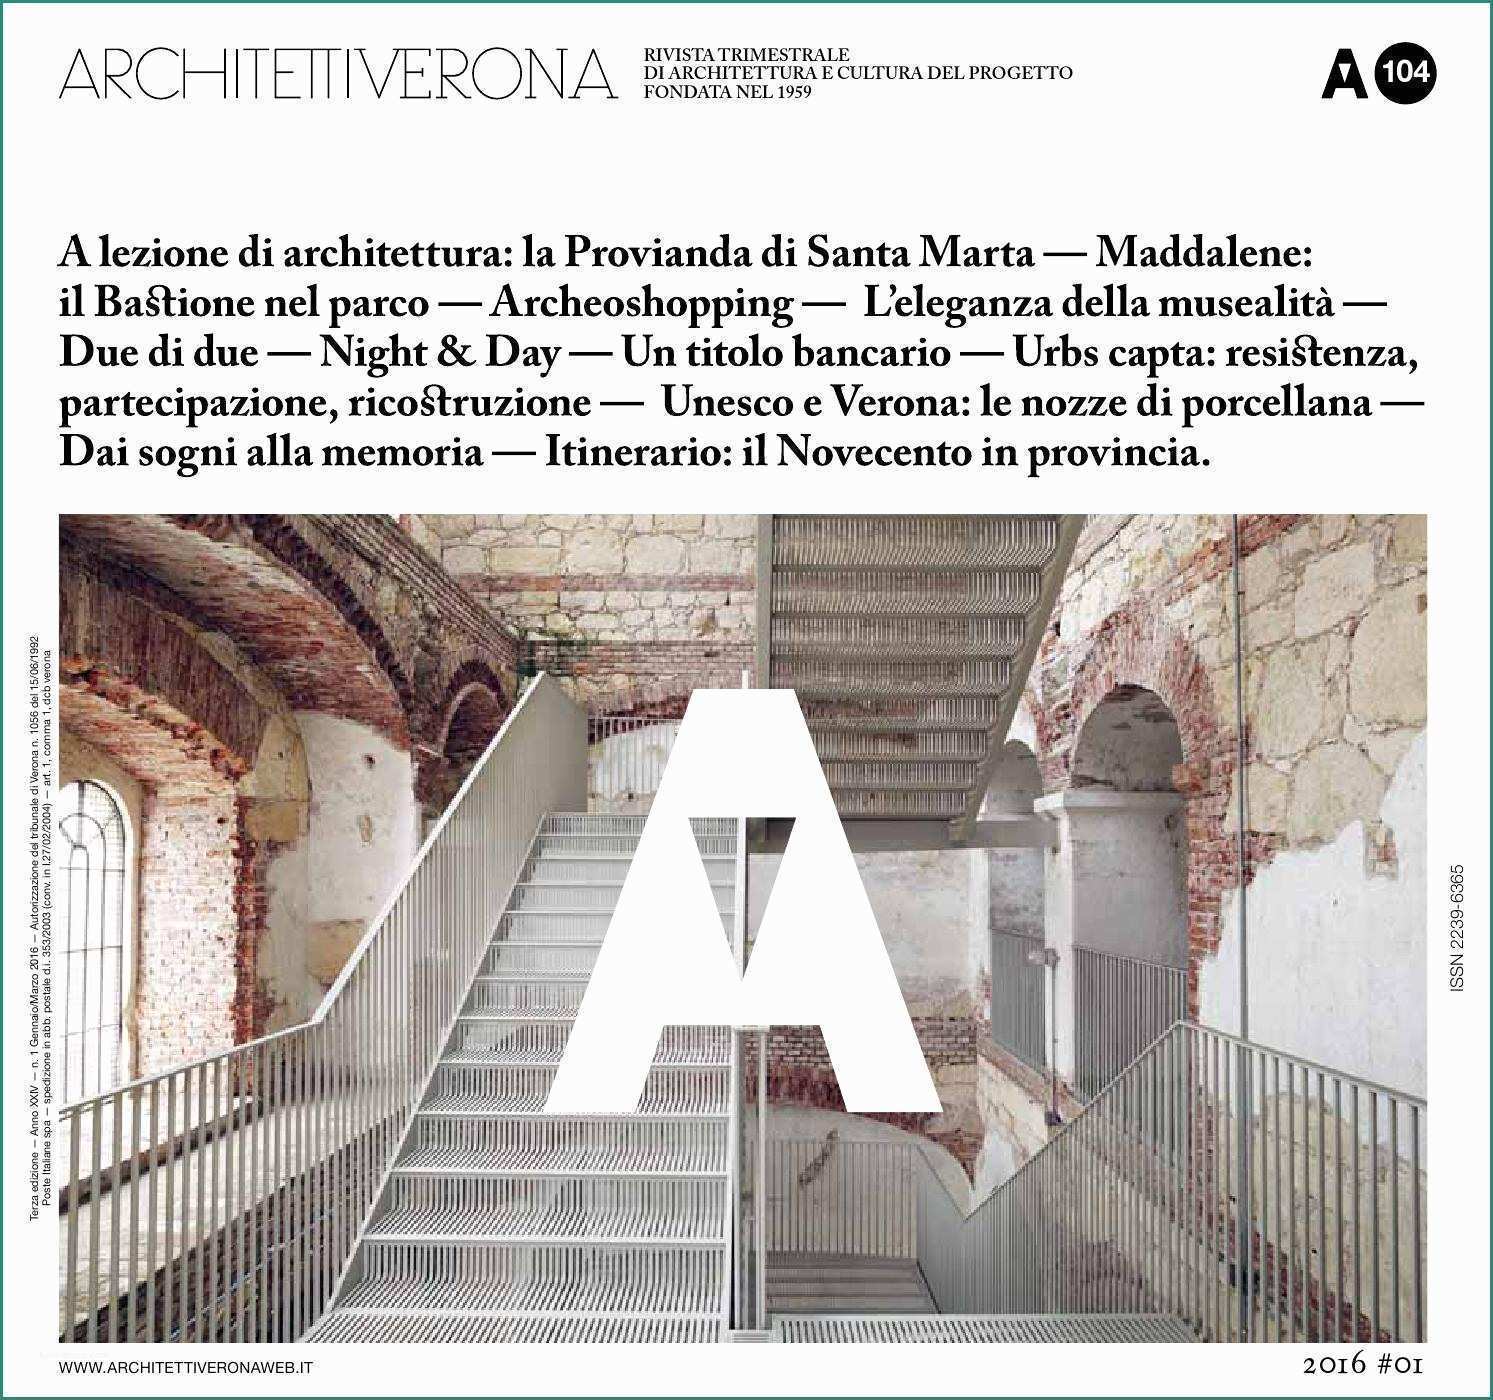 Tavoli E Sedie Ristorante Fallimenti E Architettiverona 104 by Architettiverona issuu